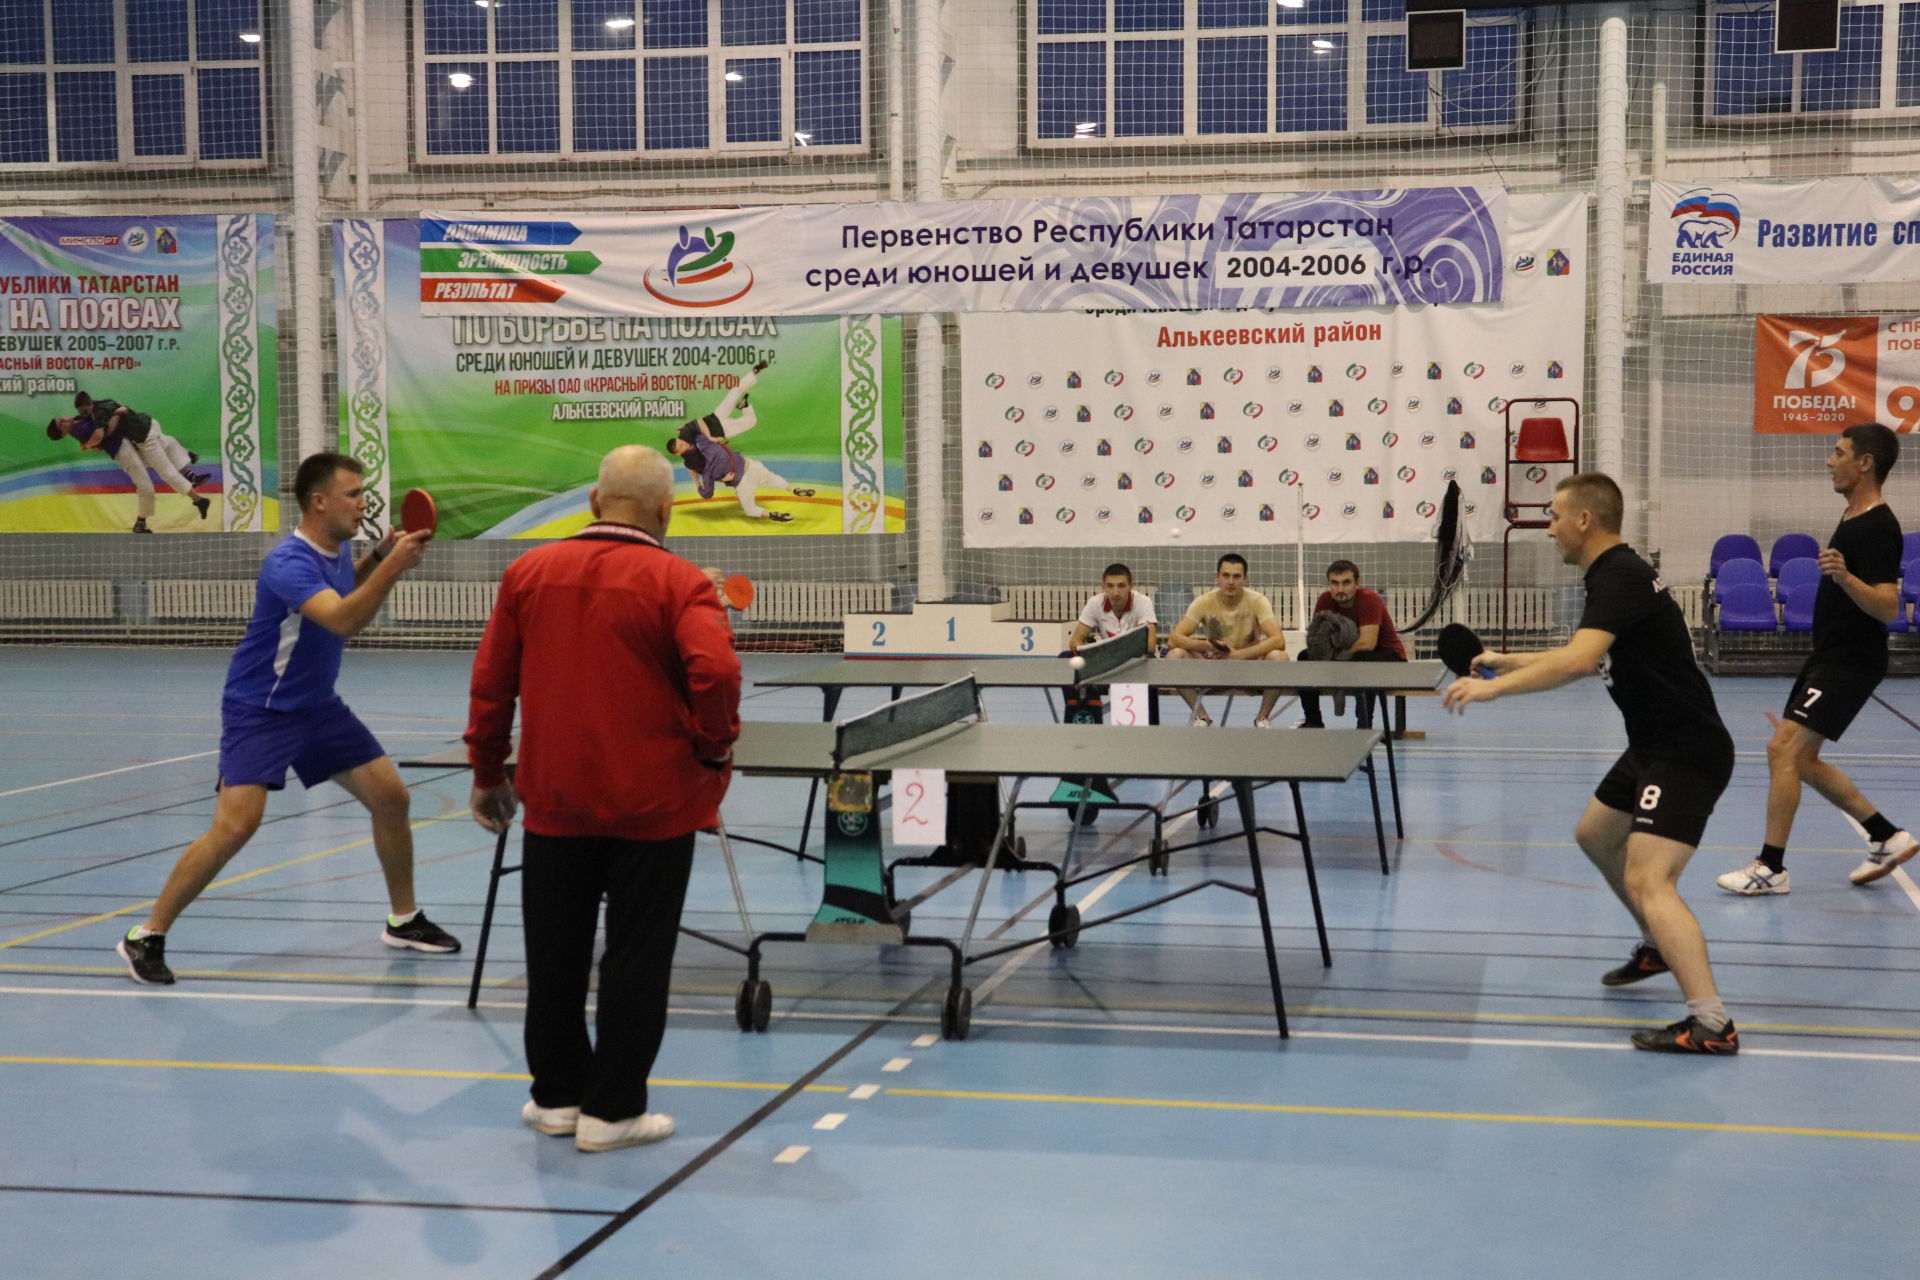 Өстәл теннисы буенча Әлки районы чемпионы билгеле булды